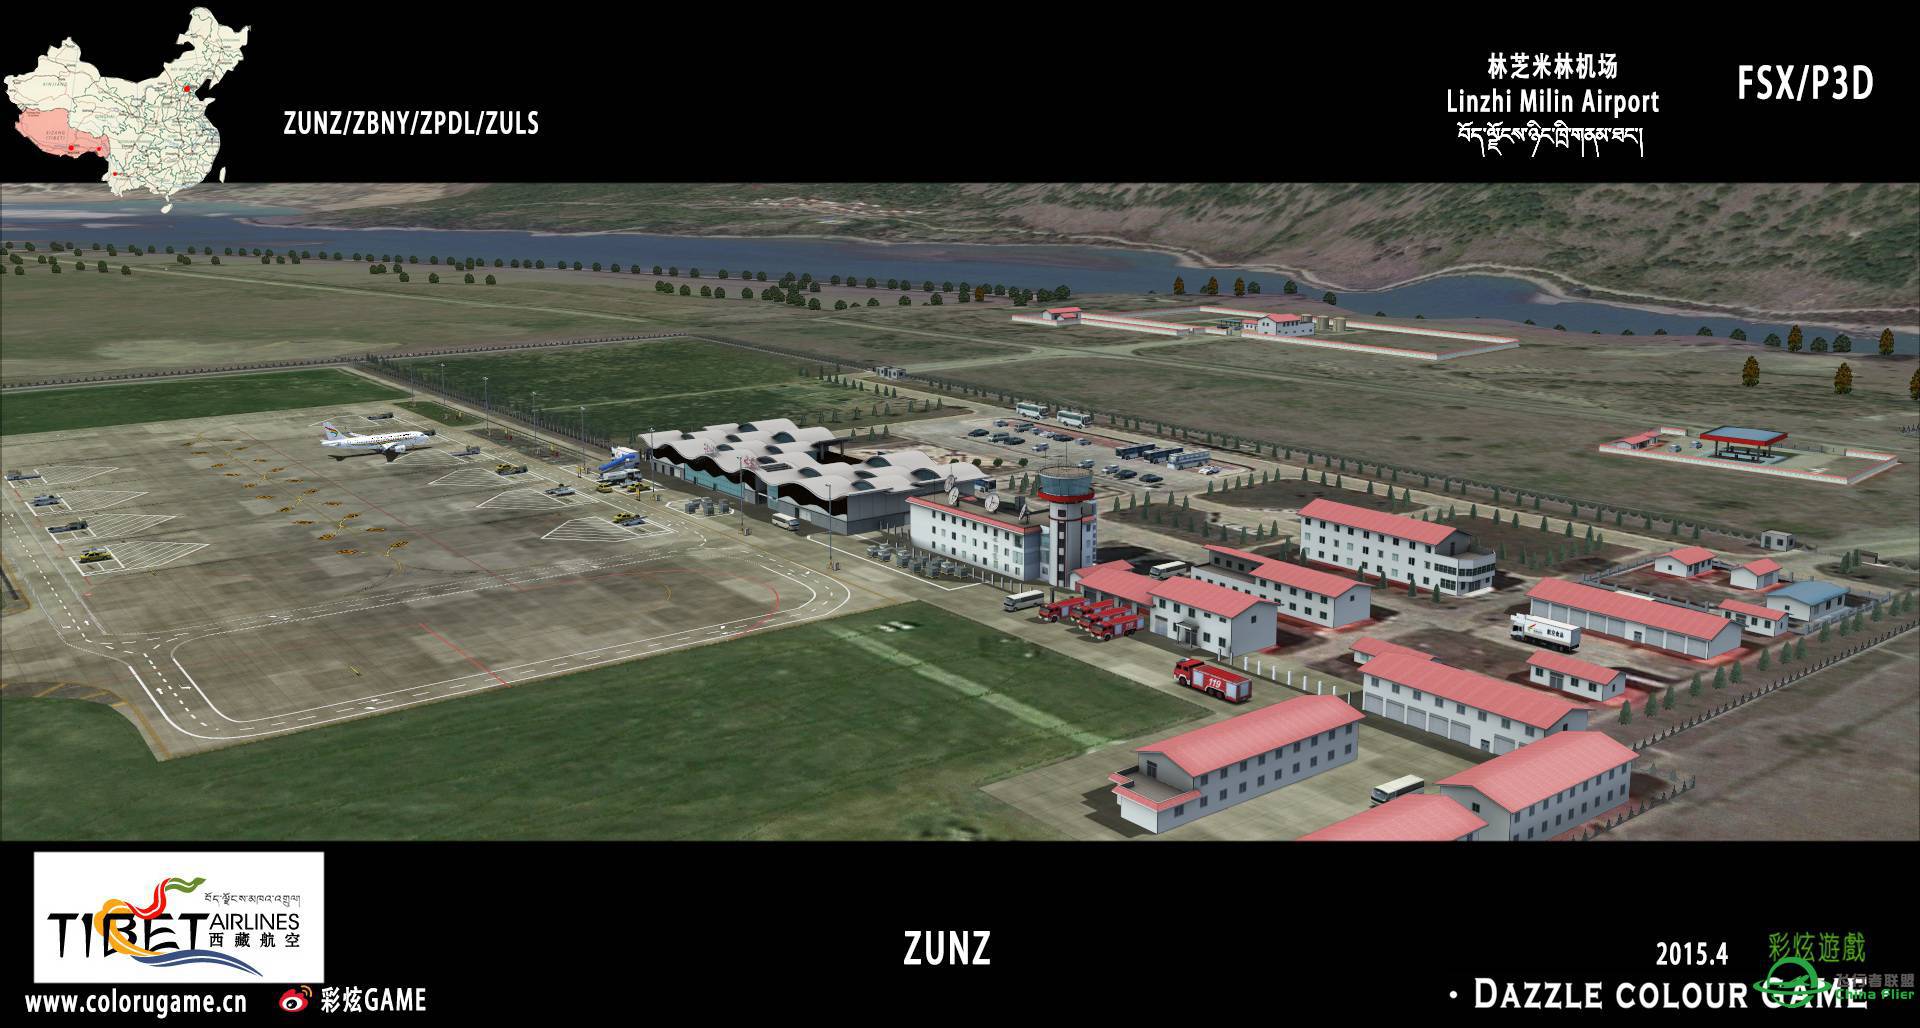 彩炫地景：林芝米林机场（ZUNZ）正式发布！-9969 